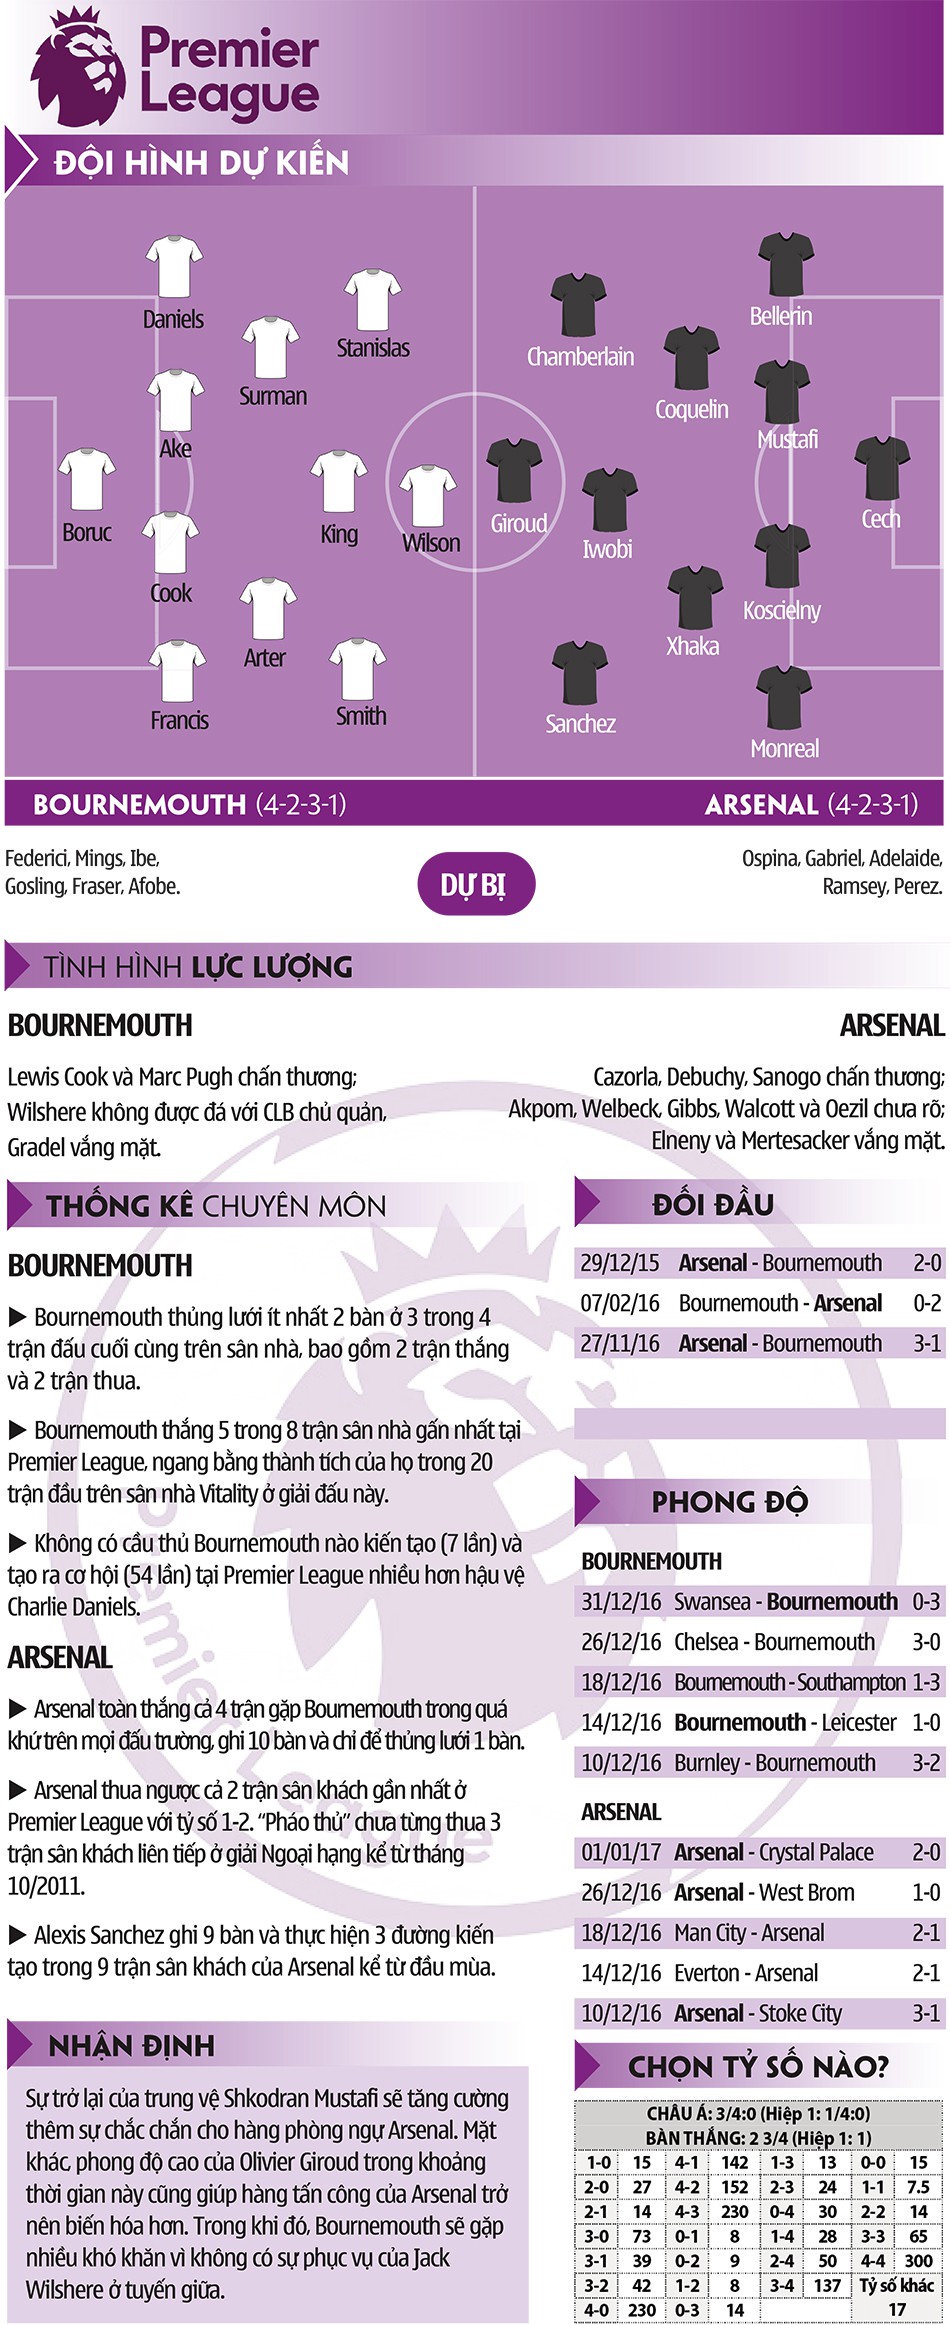 Bournemouth – Arsenal: Cơ hội nào cho Giroud